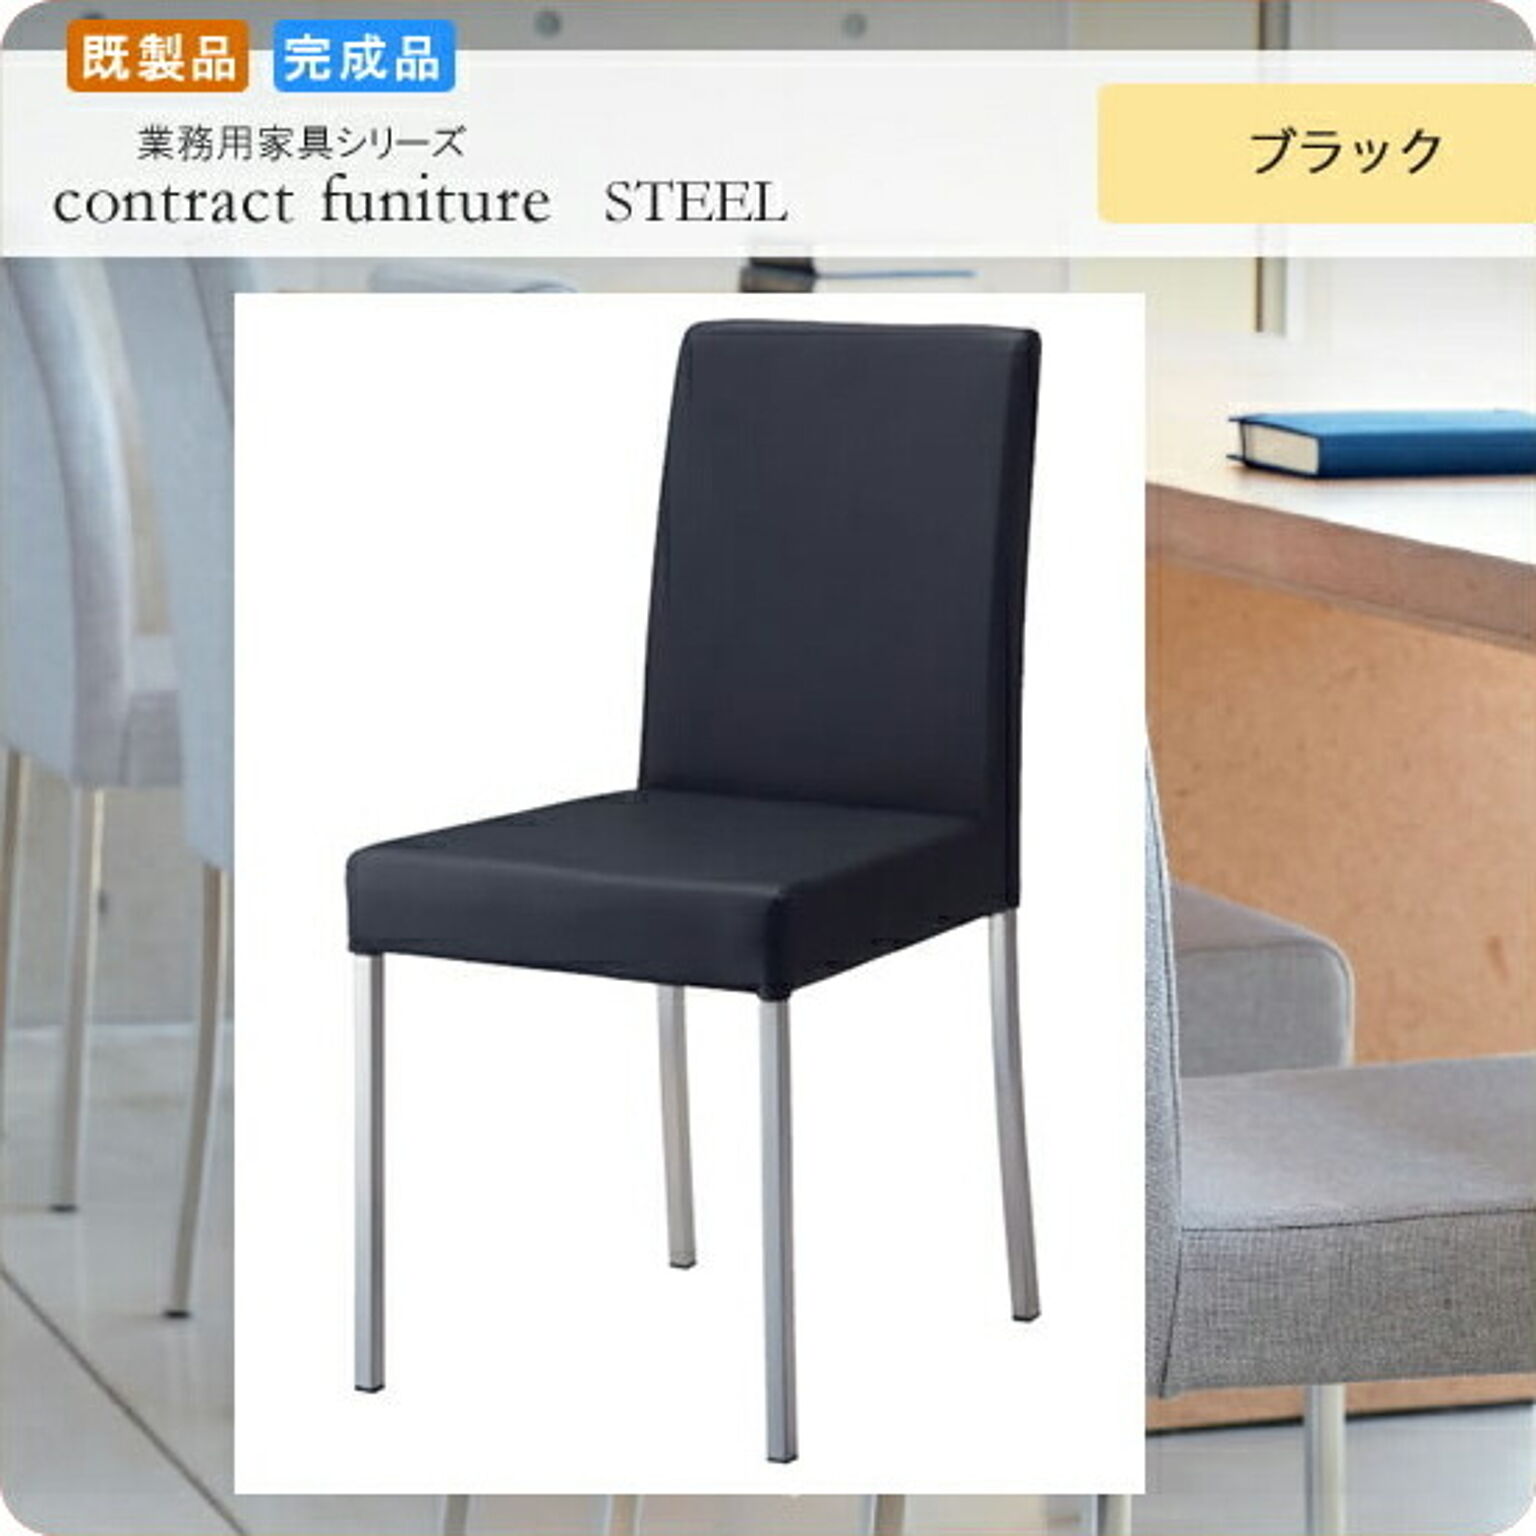 ダイニングチェアー いす イス 椅子  リレーメル ブラック 既製品 業務用家具シリーズ STEEL（スチール）  店舗 施設 コントラクト